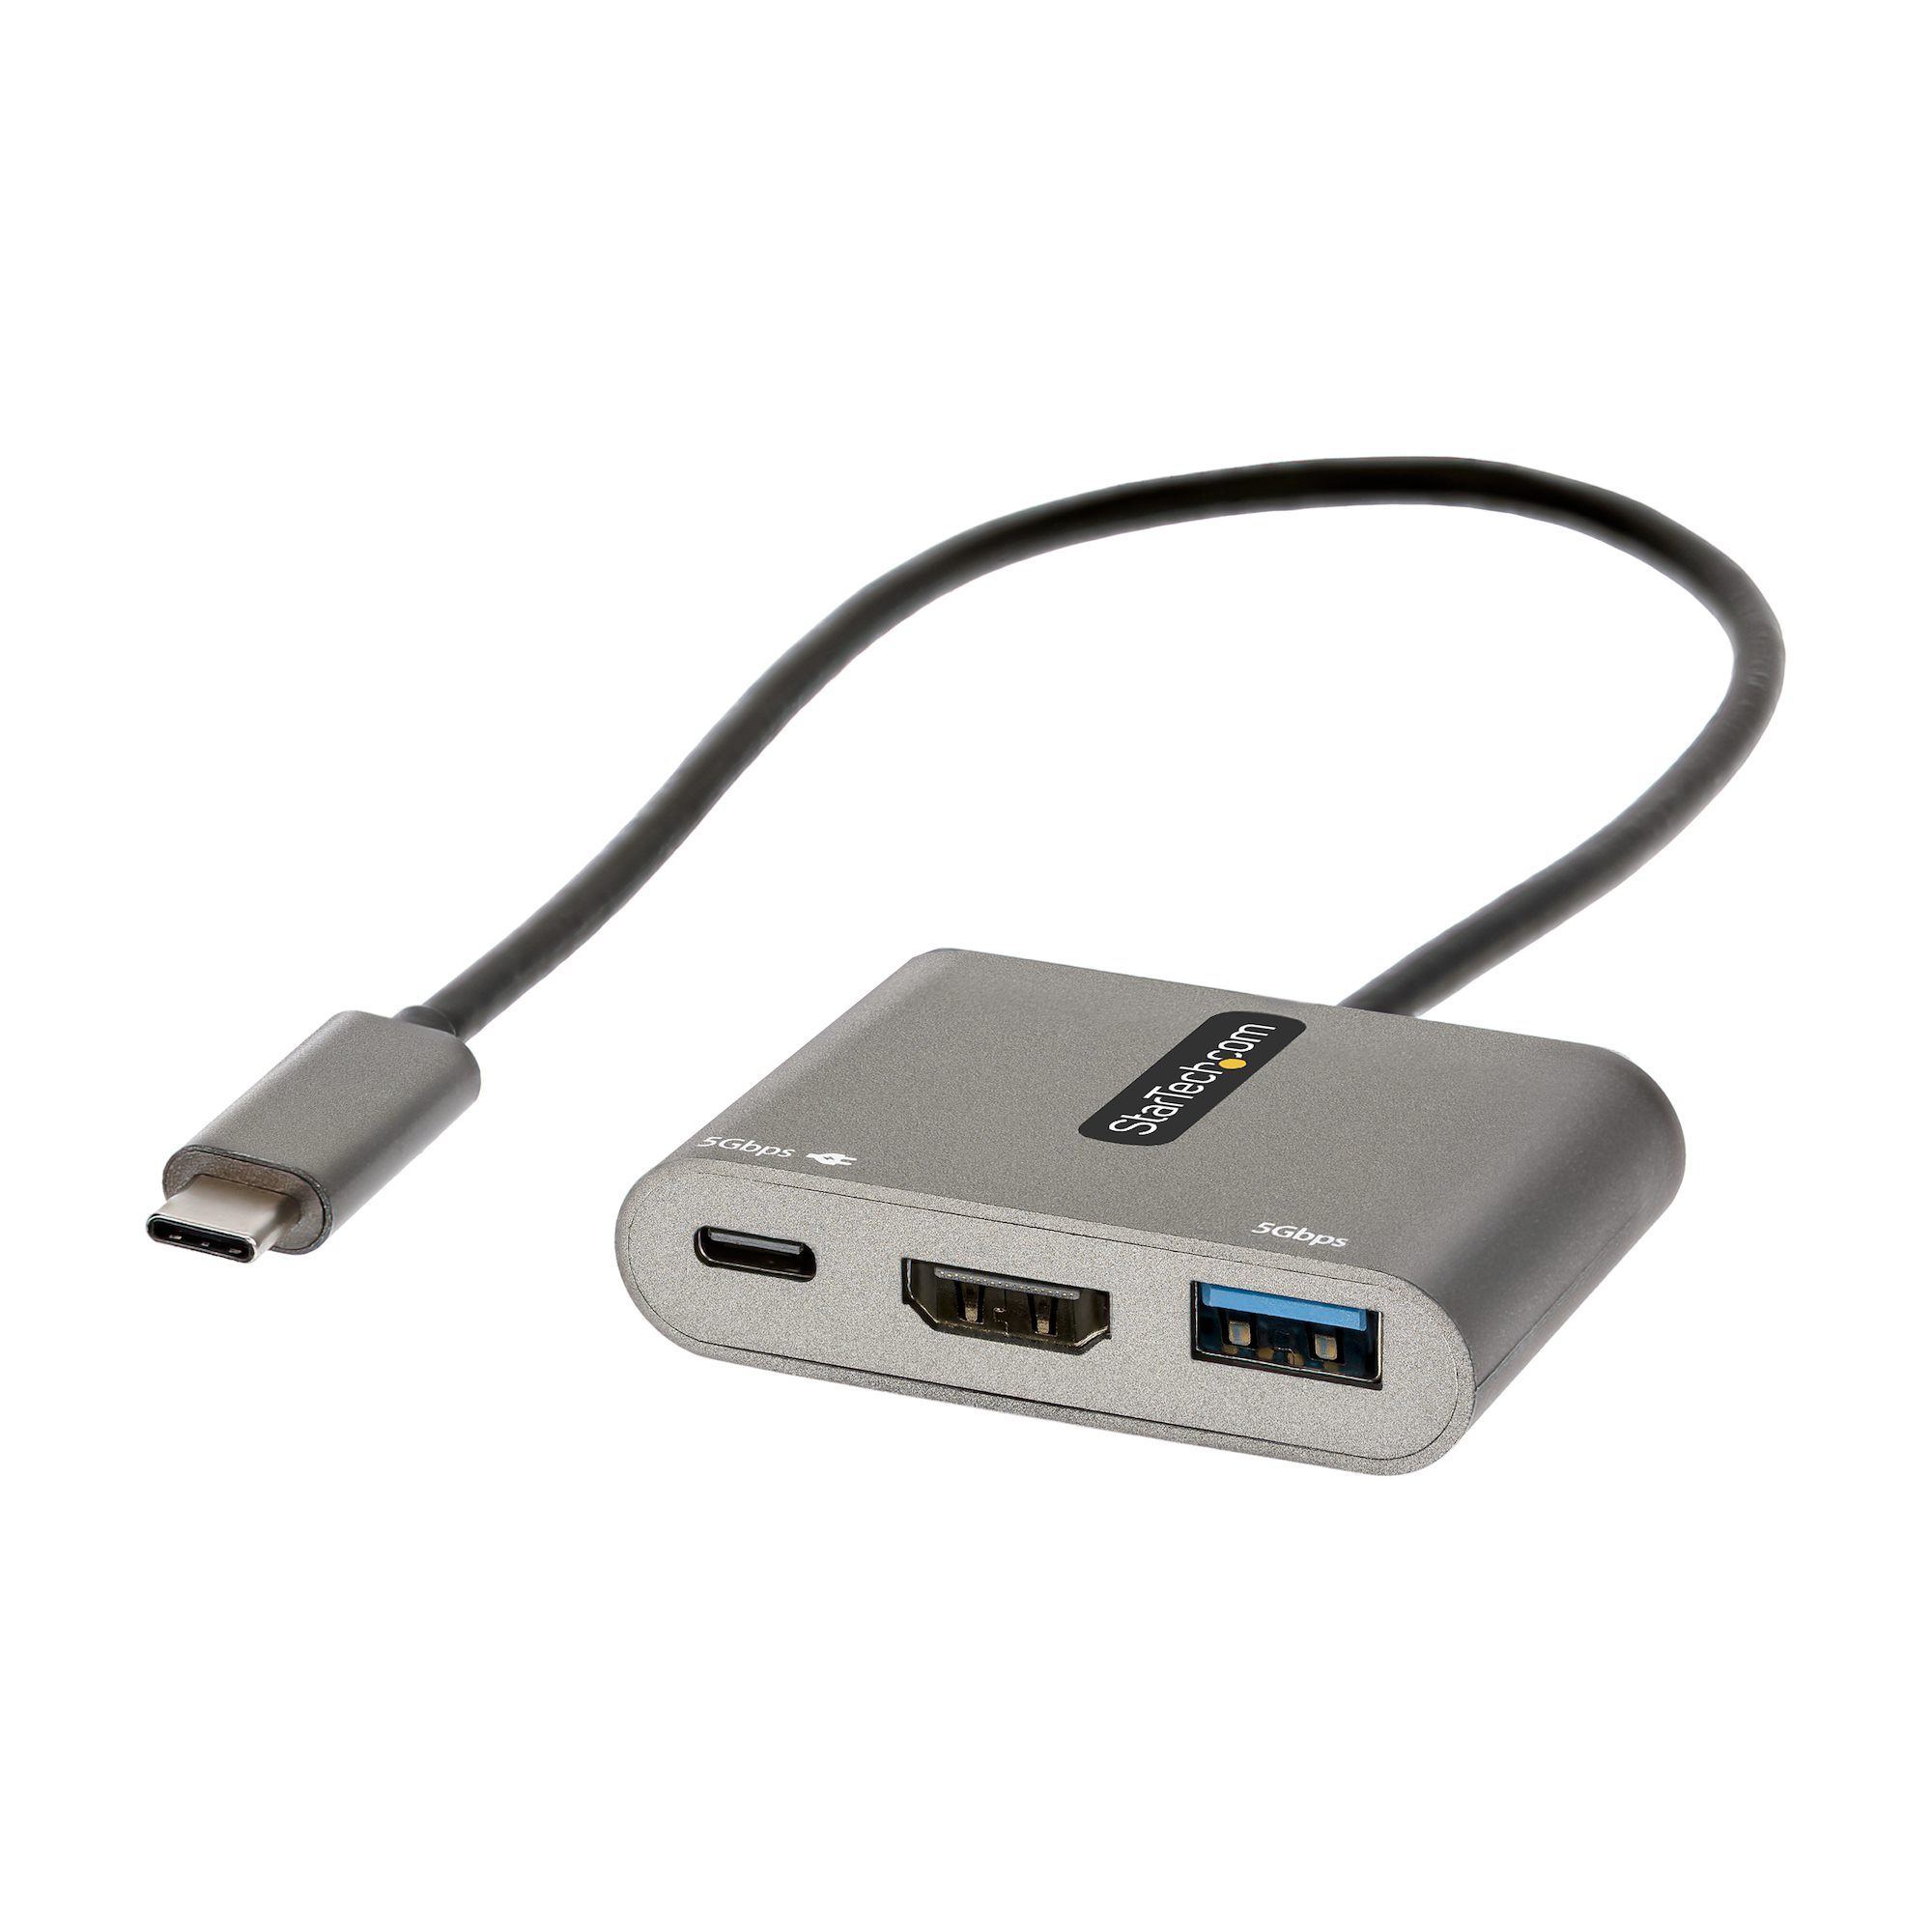 adaptador multipuerto para MacBook AV digital adaptador multipuerto tipo C a HDMI USB C 4K Adaptador USB C a HDMI Chromebook Pixel y más ordenadores portátiles tipo C USB 3.1 tipo C HDMI 